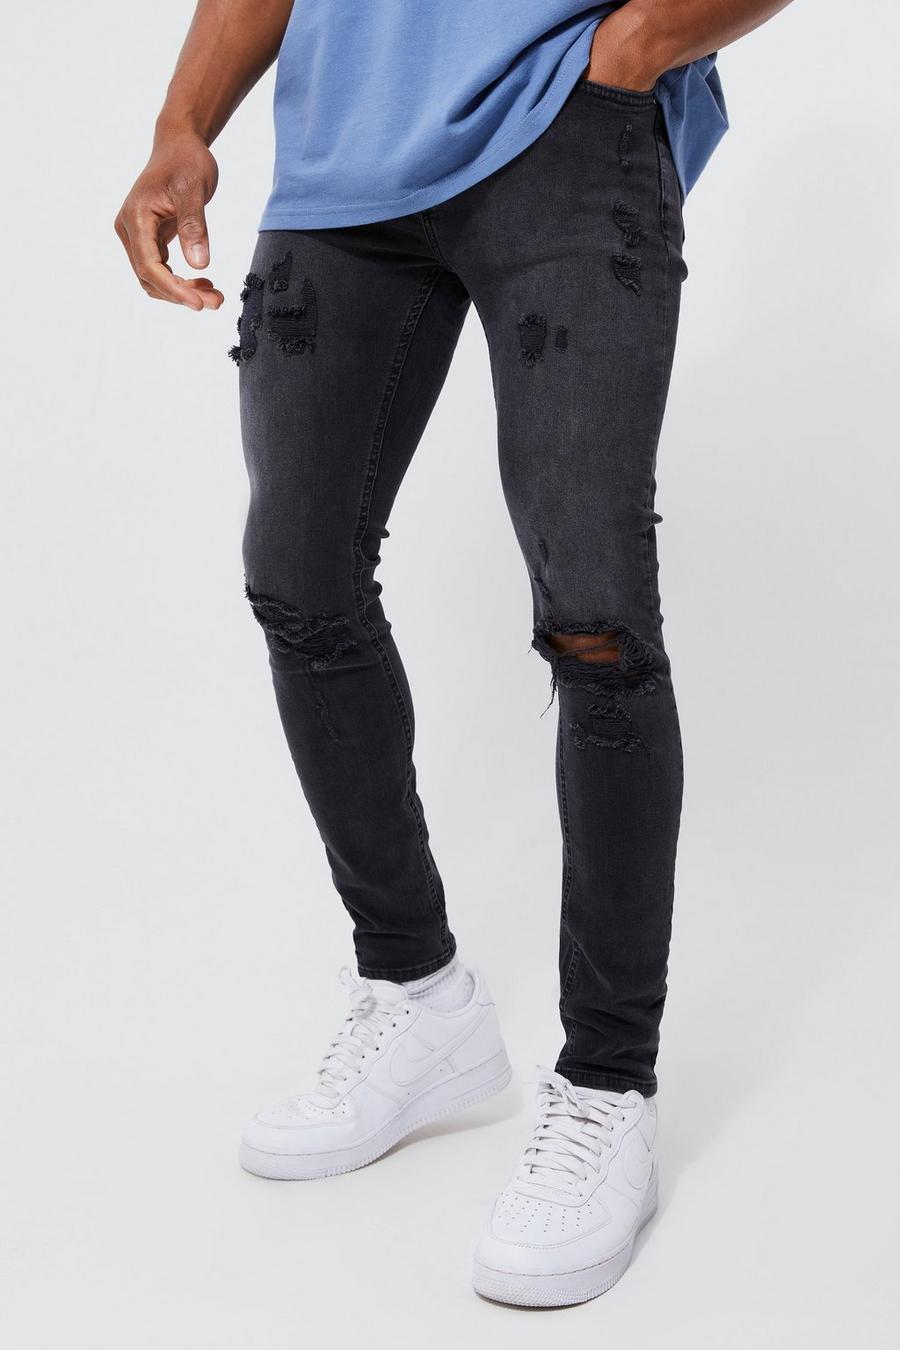 Jeans Skinny Fit Stretch con strappo estremo sul ginocchio, Washed black